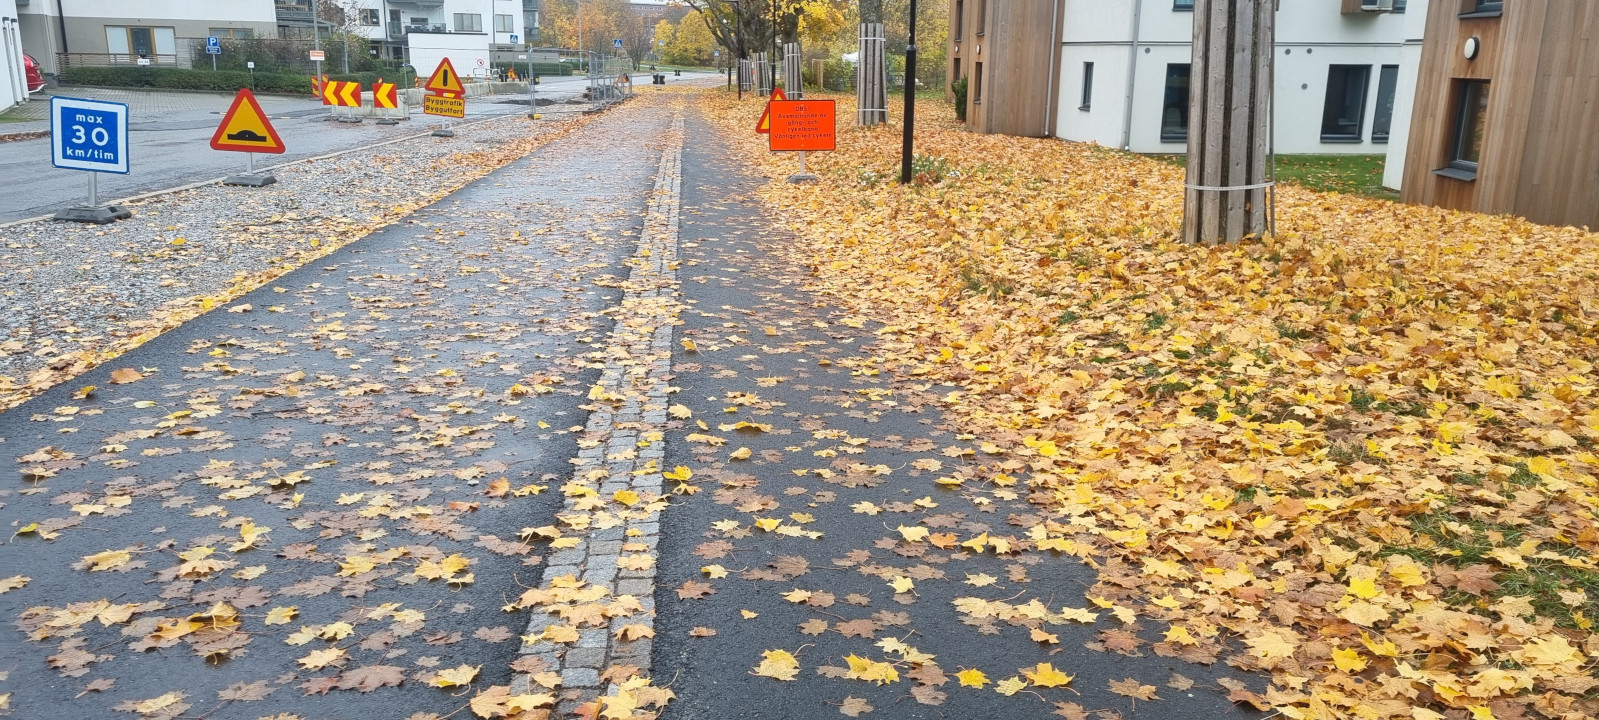 Via de bicicleta coberta por folhas e com várias placas de obras na rua.